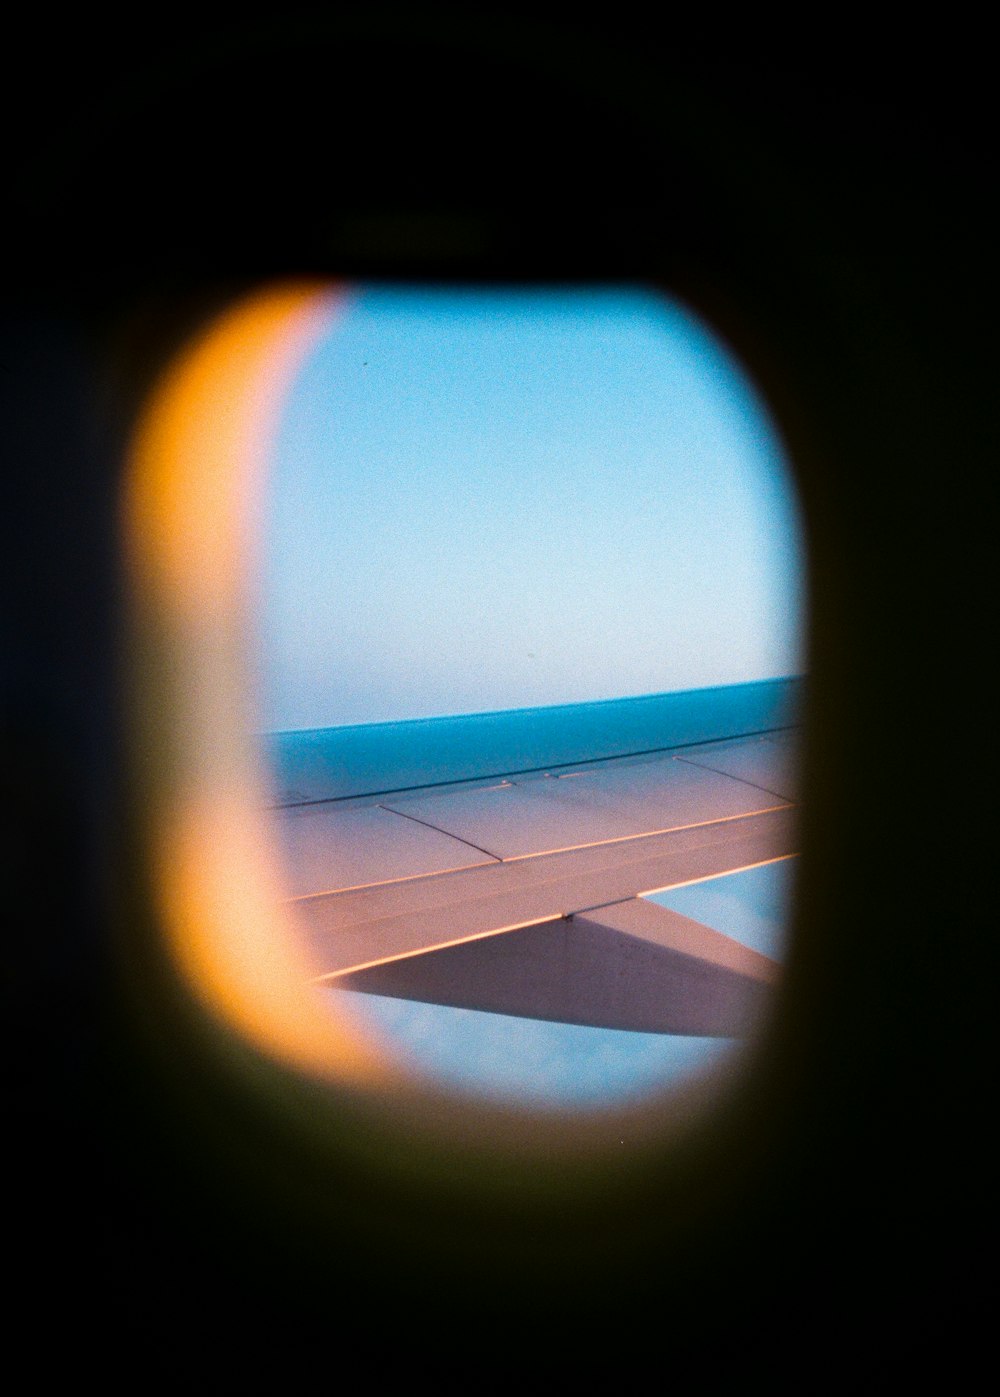 finestrino dell'aereo di linea